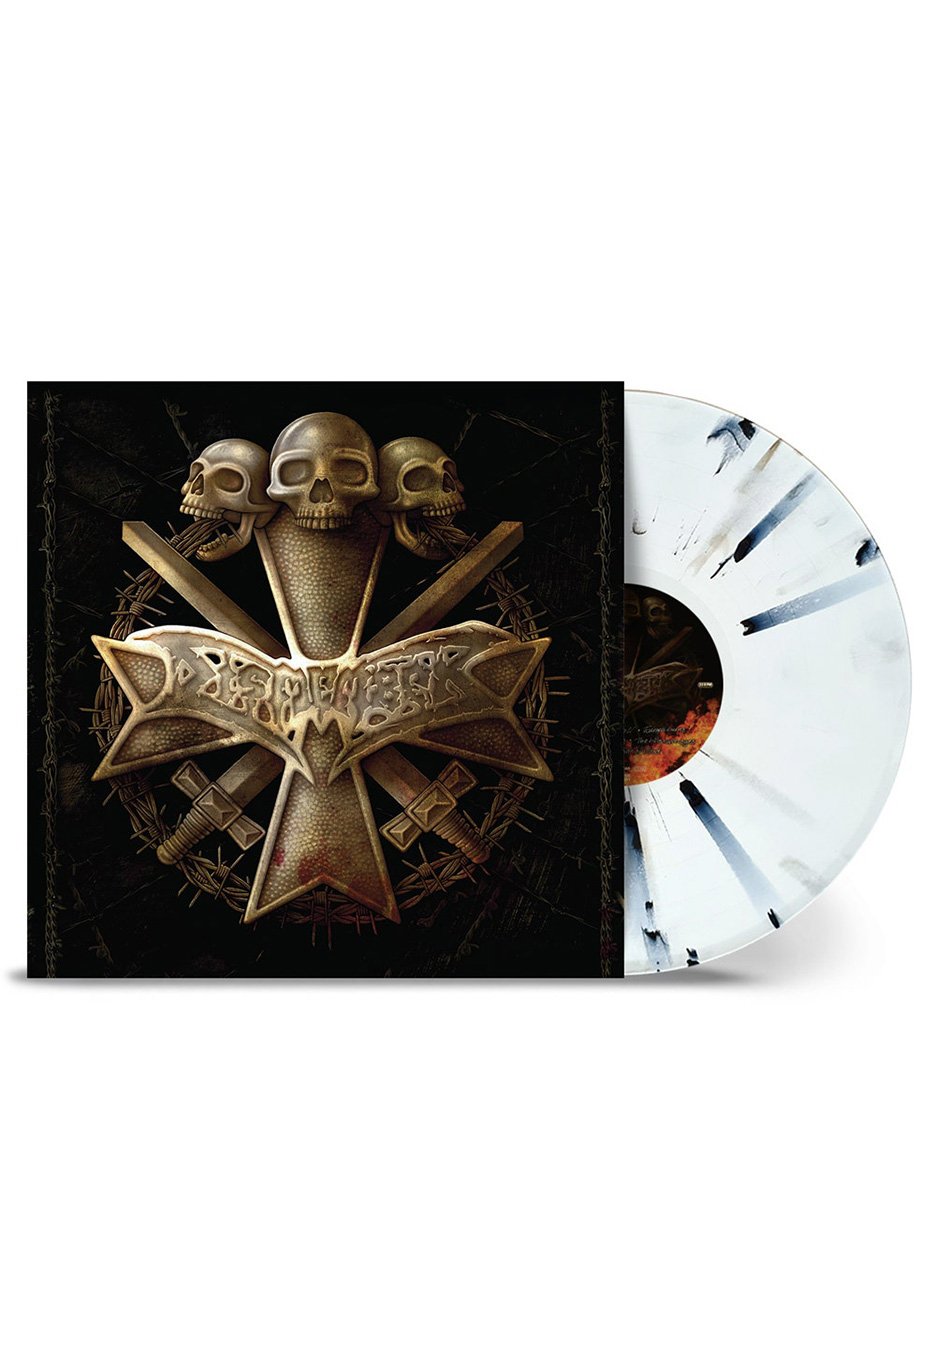 Dismember - Dismember (Reissue)  - Splattered Vinyl